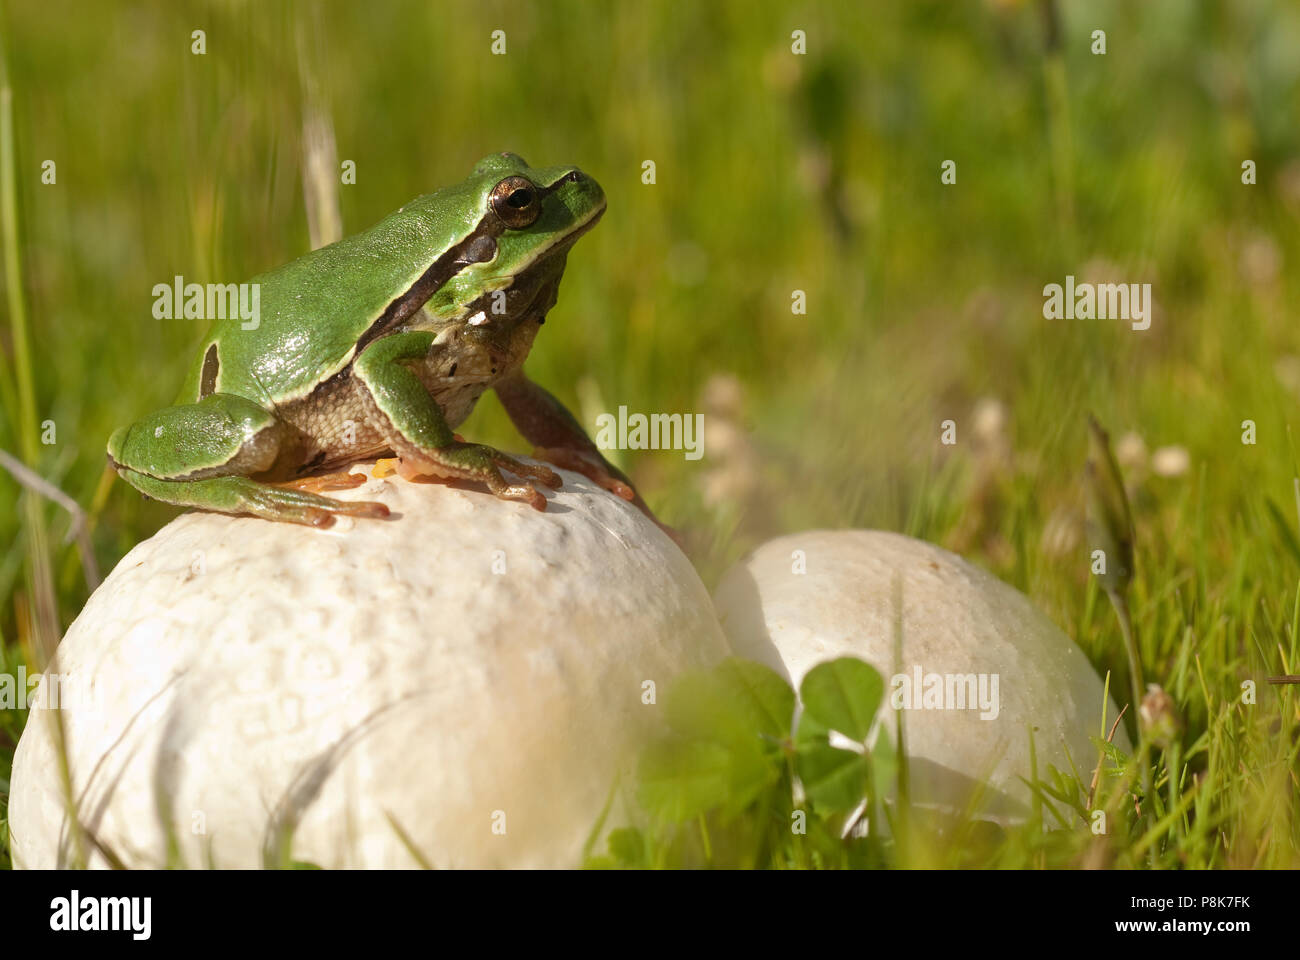 Ziemlich amphibian grünen Laubfrosch, Hyla arborea, sitzen auf dem Gras, Spanien Stockfoto